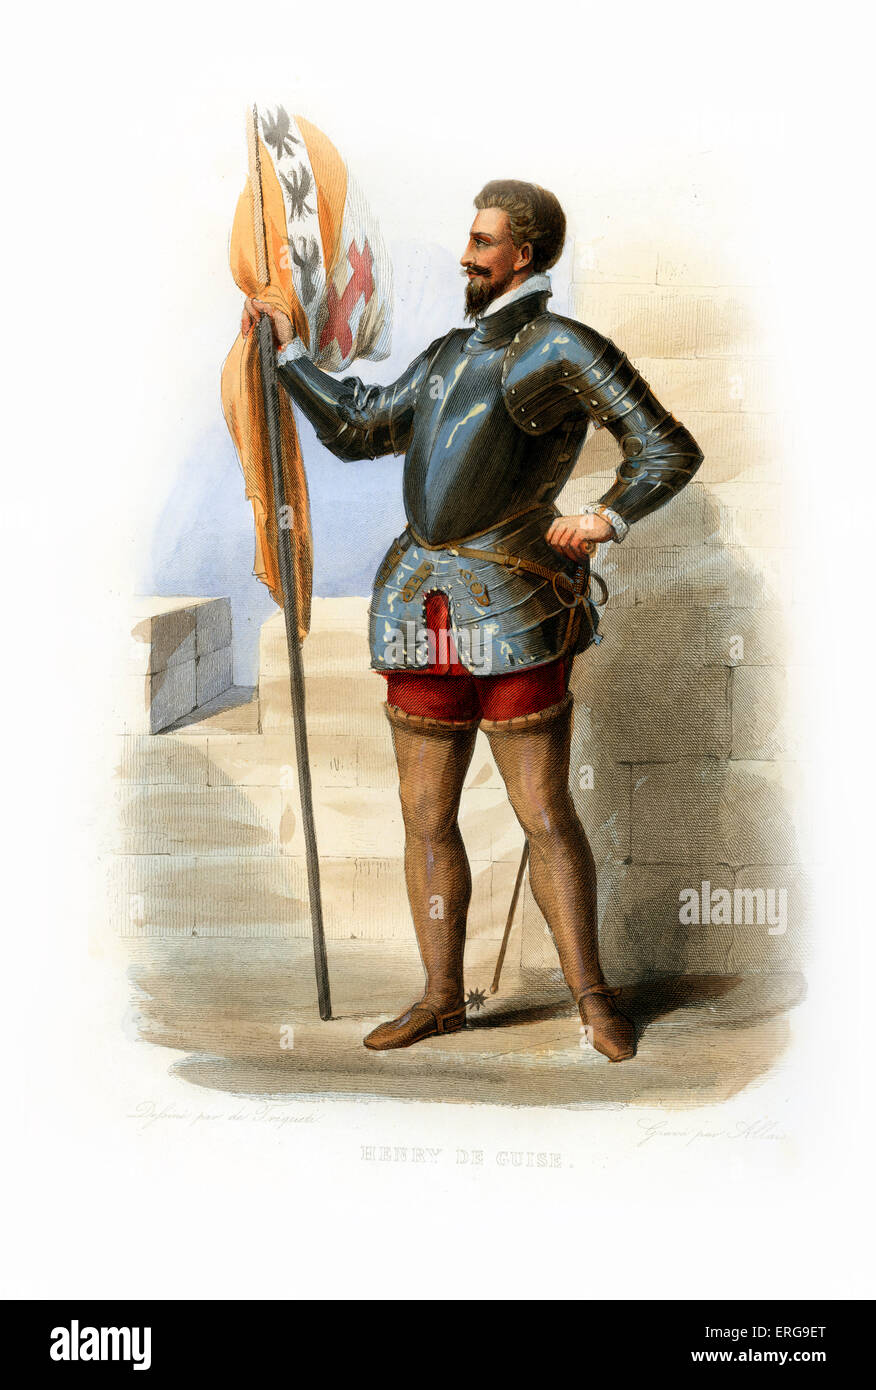 Heinrich i., Herzog von Guise. Französische Renaissance-Herrscher. 1550-1588. Kupferstich von Allais, c.1846. Stockfoto